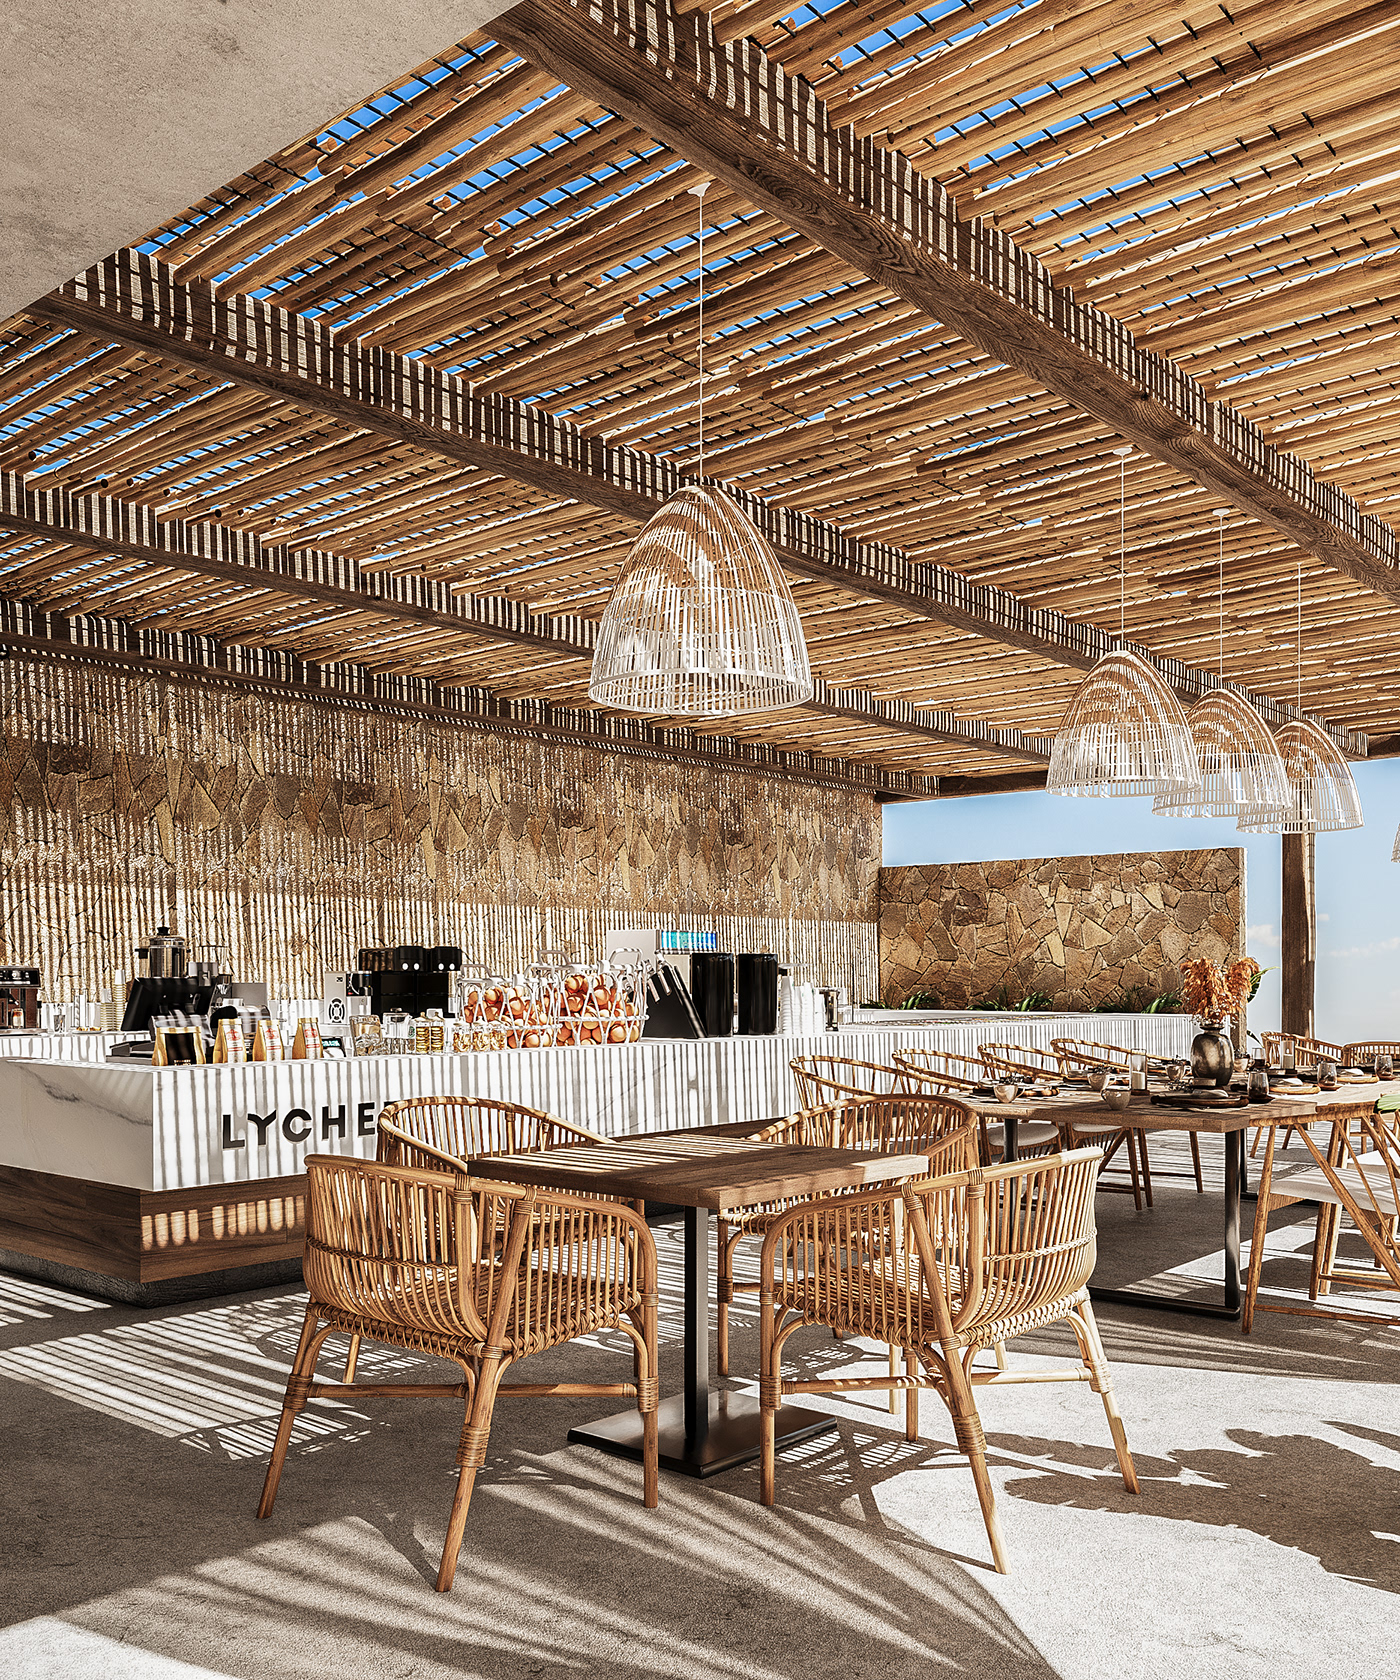 cafe restaurant interiordesign visualization Render 3dsmax sea design beach Outdoor